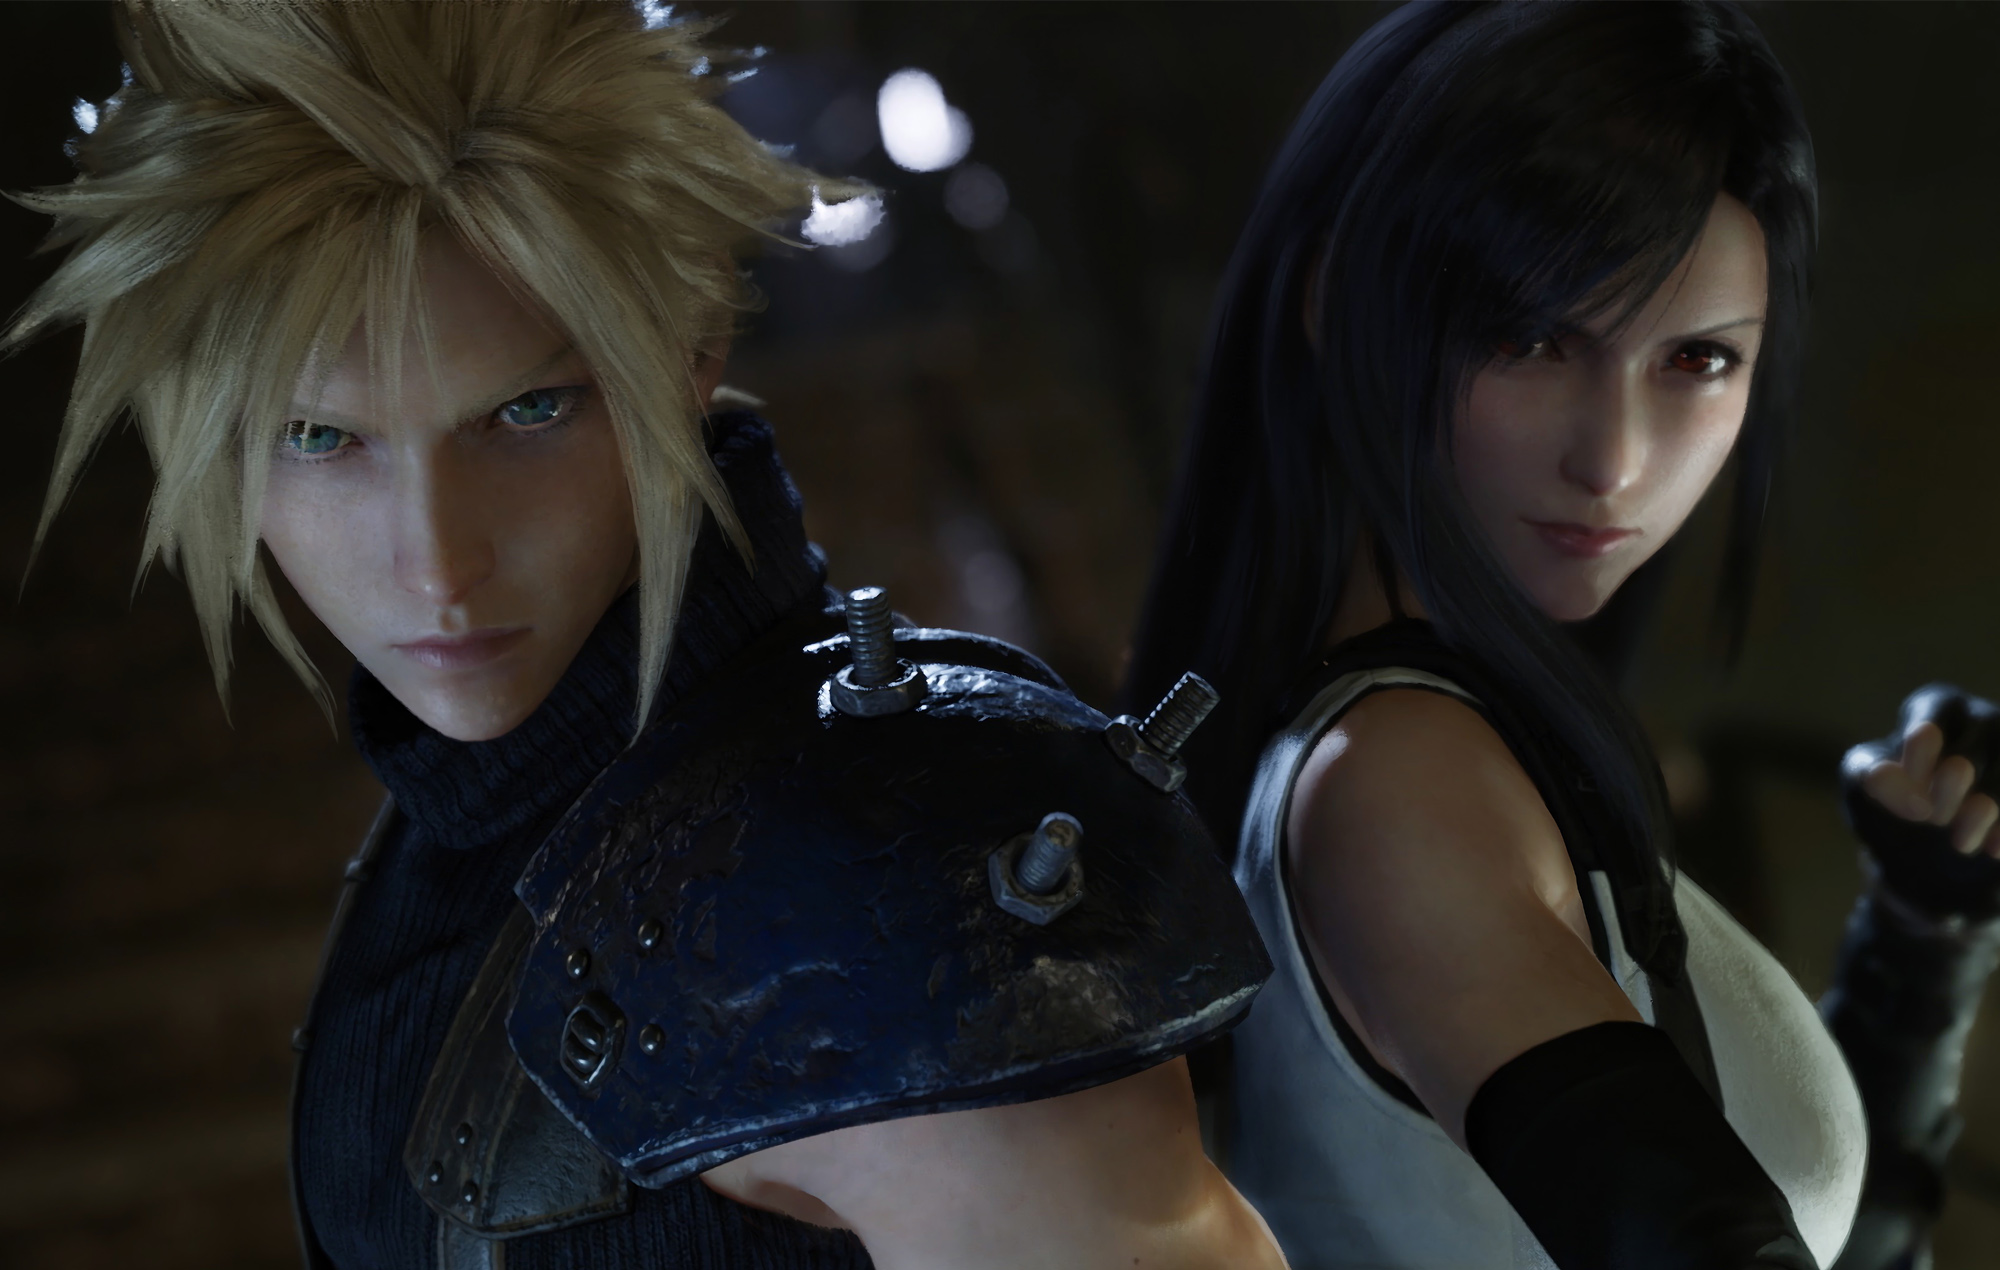 El presidente de Square Enix dice que los estudios japoneses no deben "imitar los juegos occidentales"